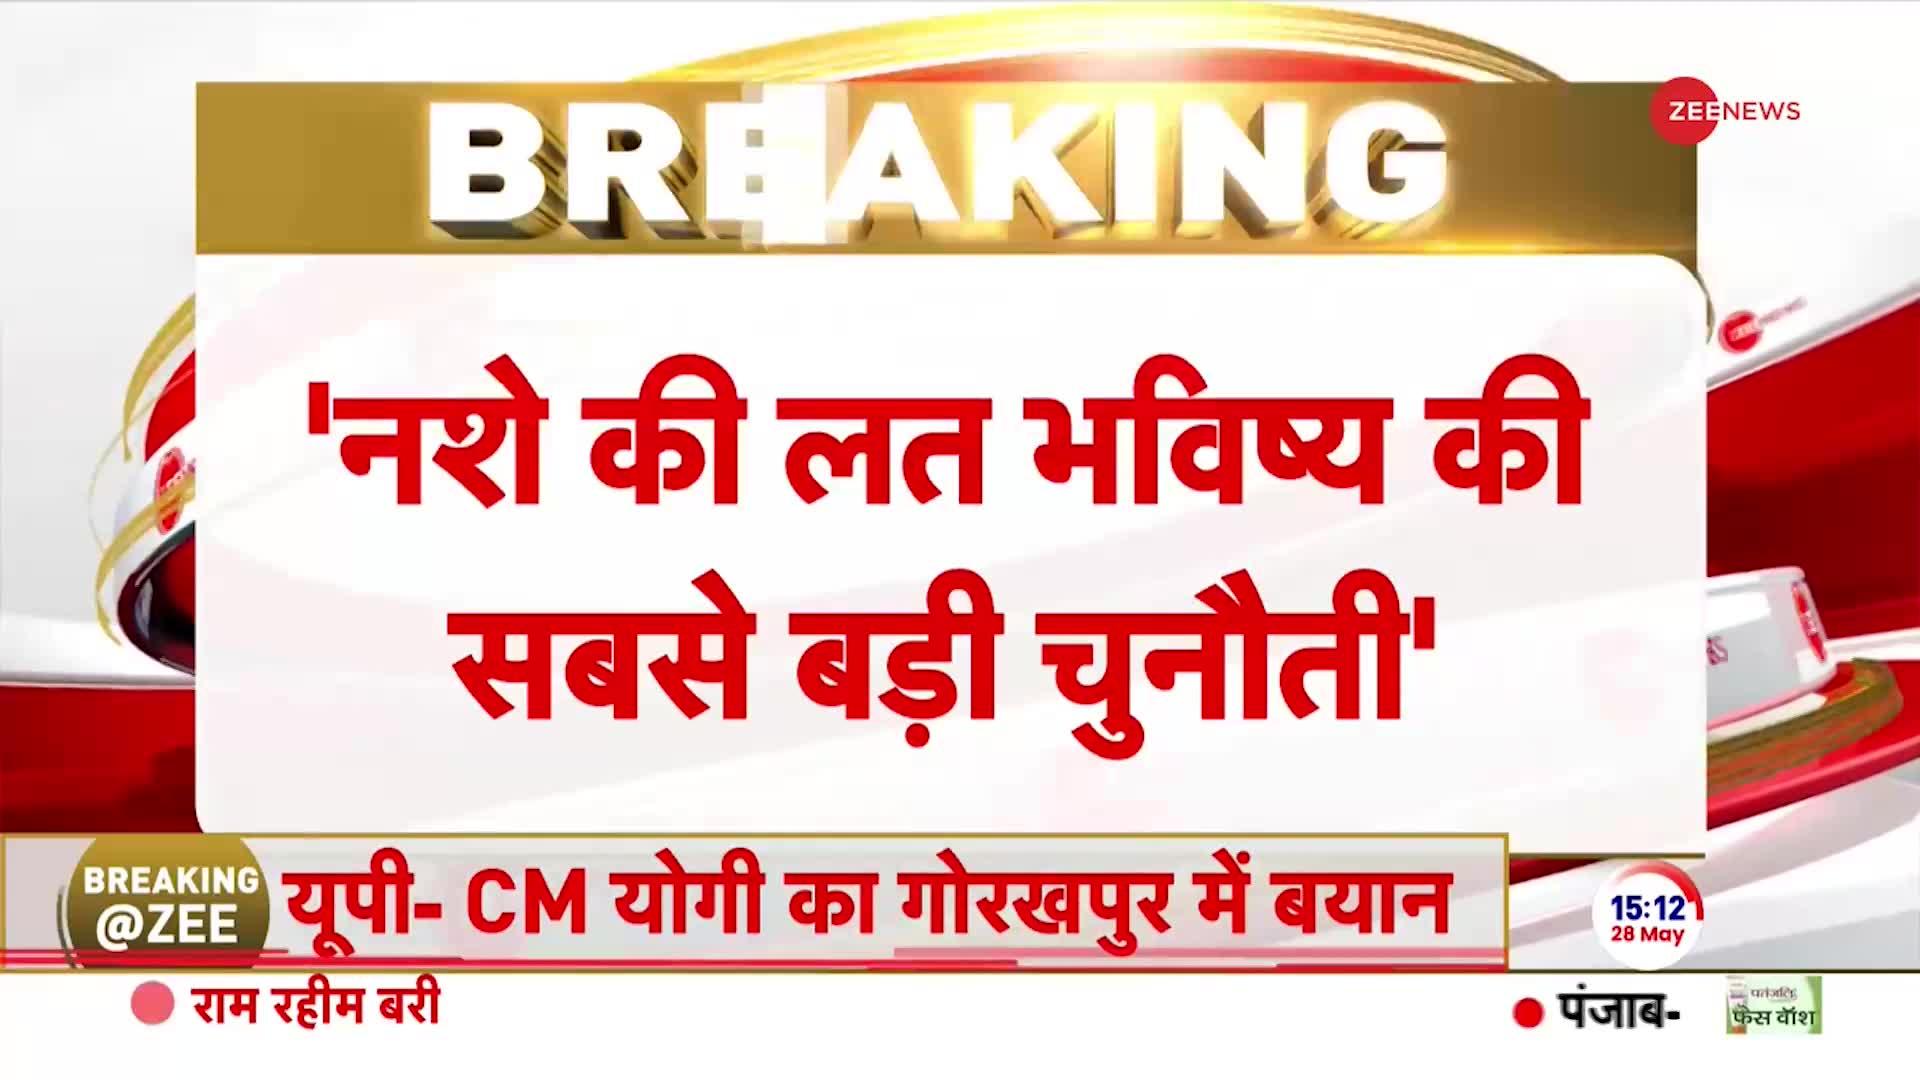 Breaking News: आम आदमी पार्टी के खिलाफ उतरी कांग्रेस!